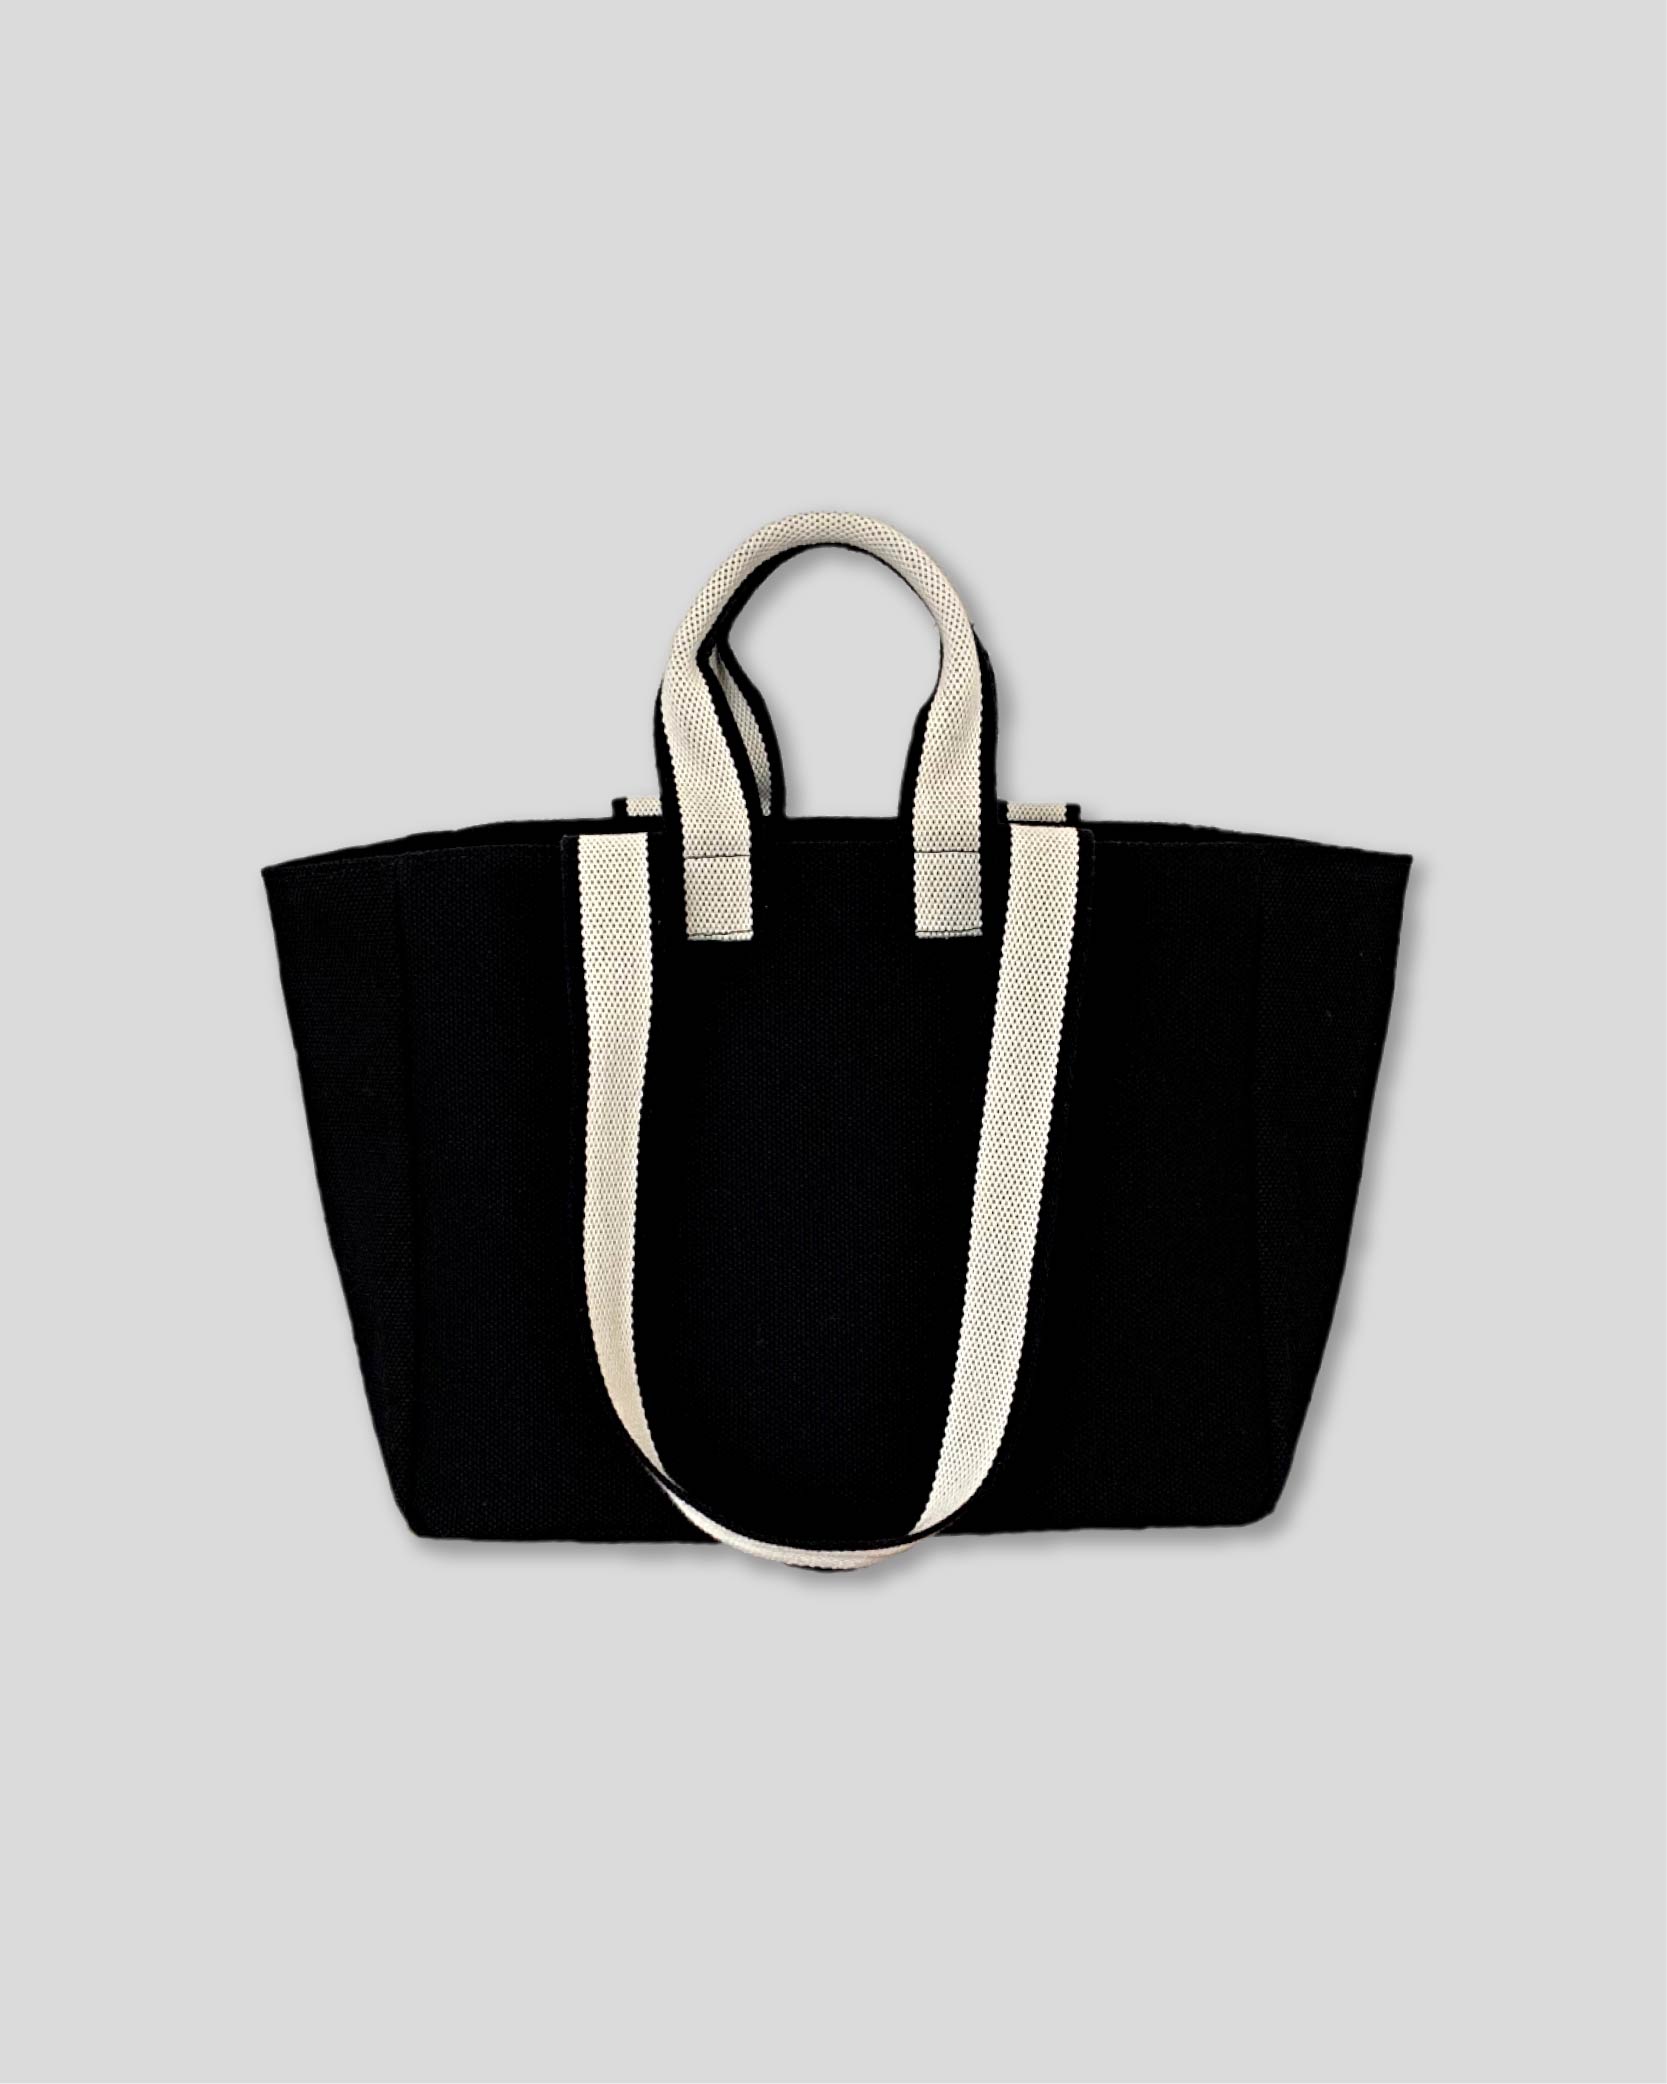 언폴드,unfold,에코백,파우치,천가방,친환경가방,[예약 배송 4/12]  Two-tone strap bag (black)